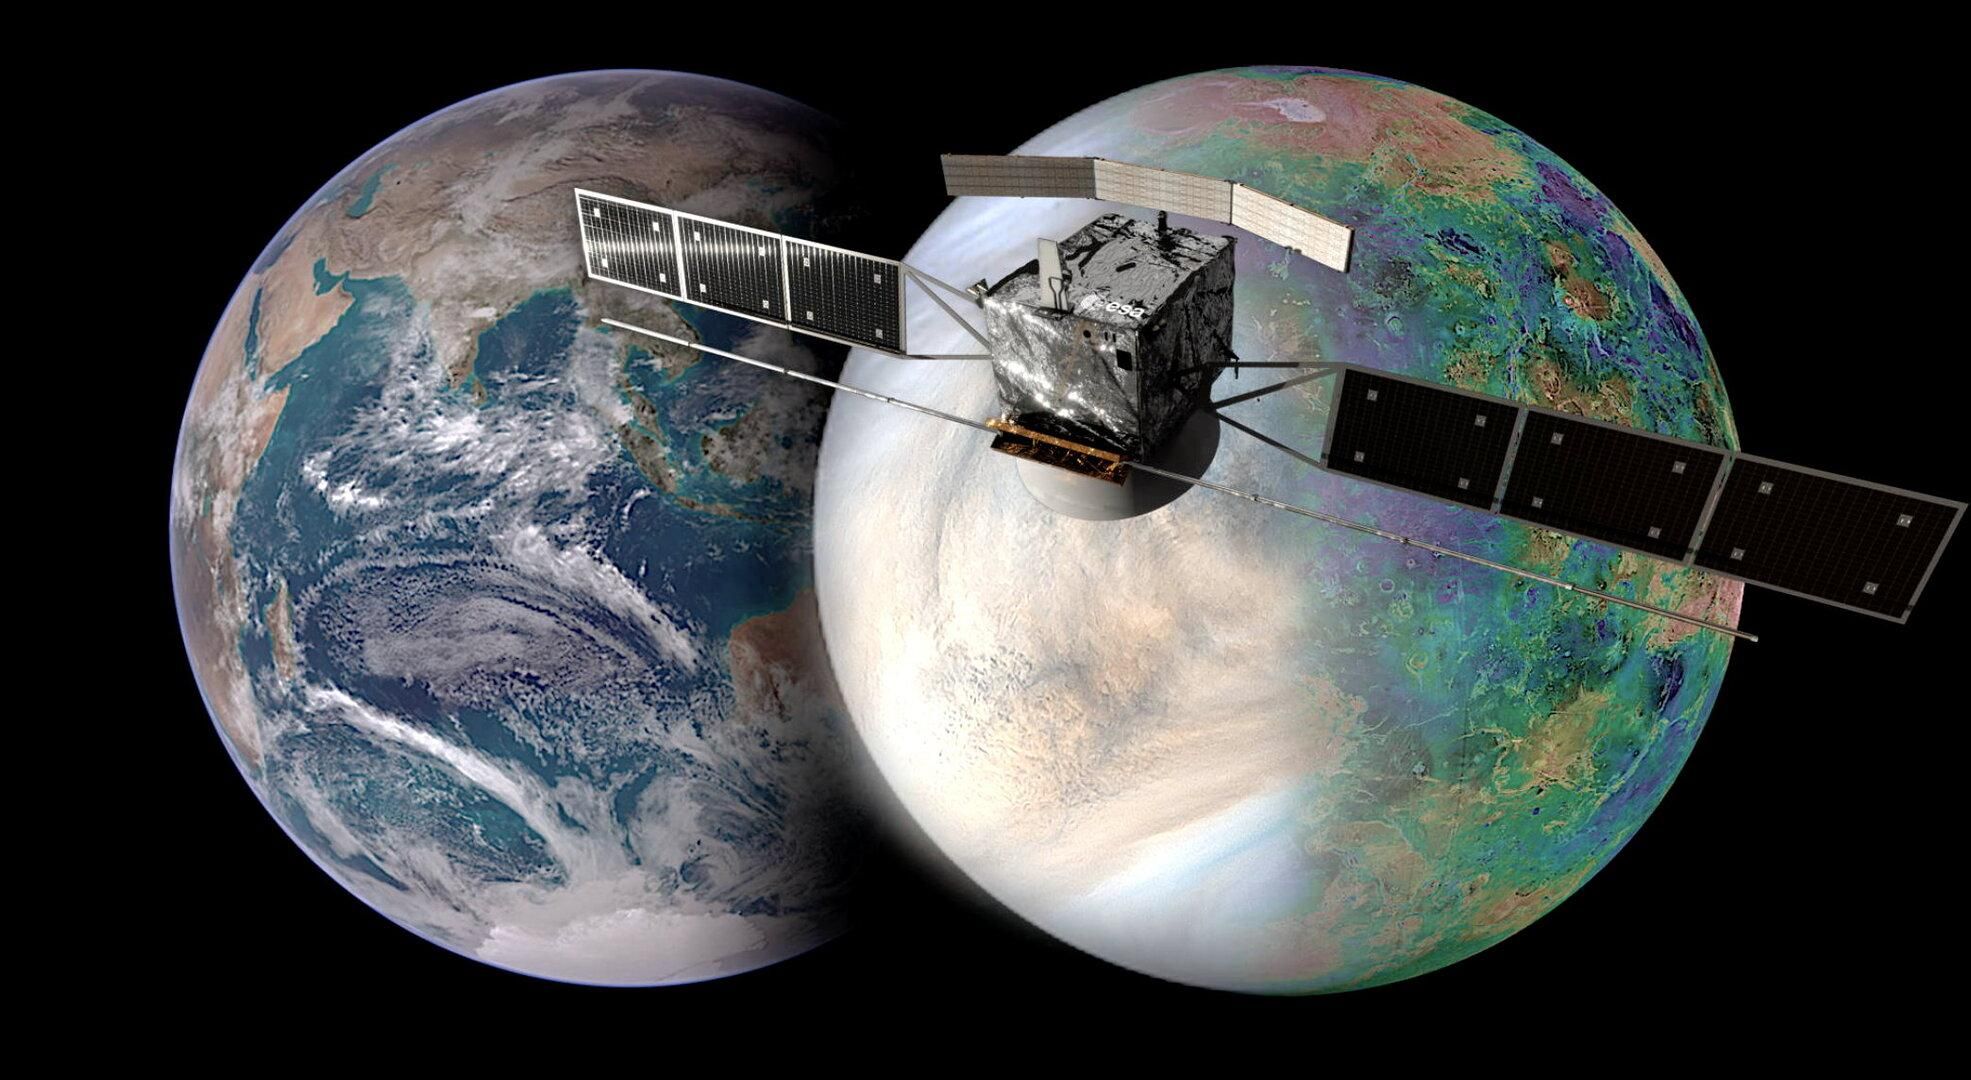 Європа летить до Венери: зонд ESA запустять до Венери